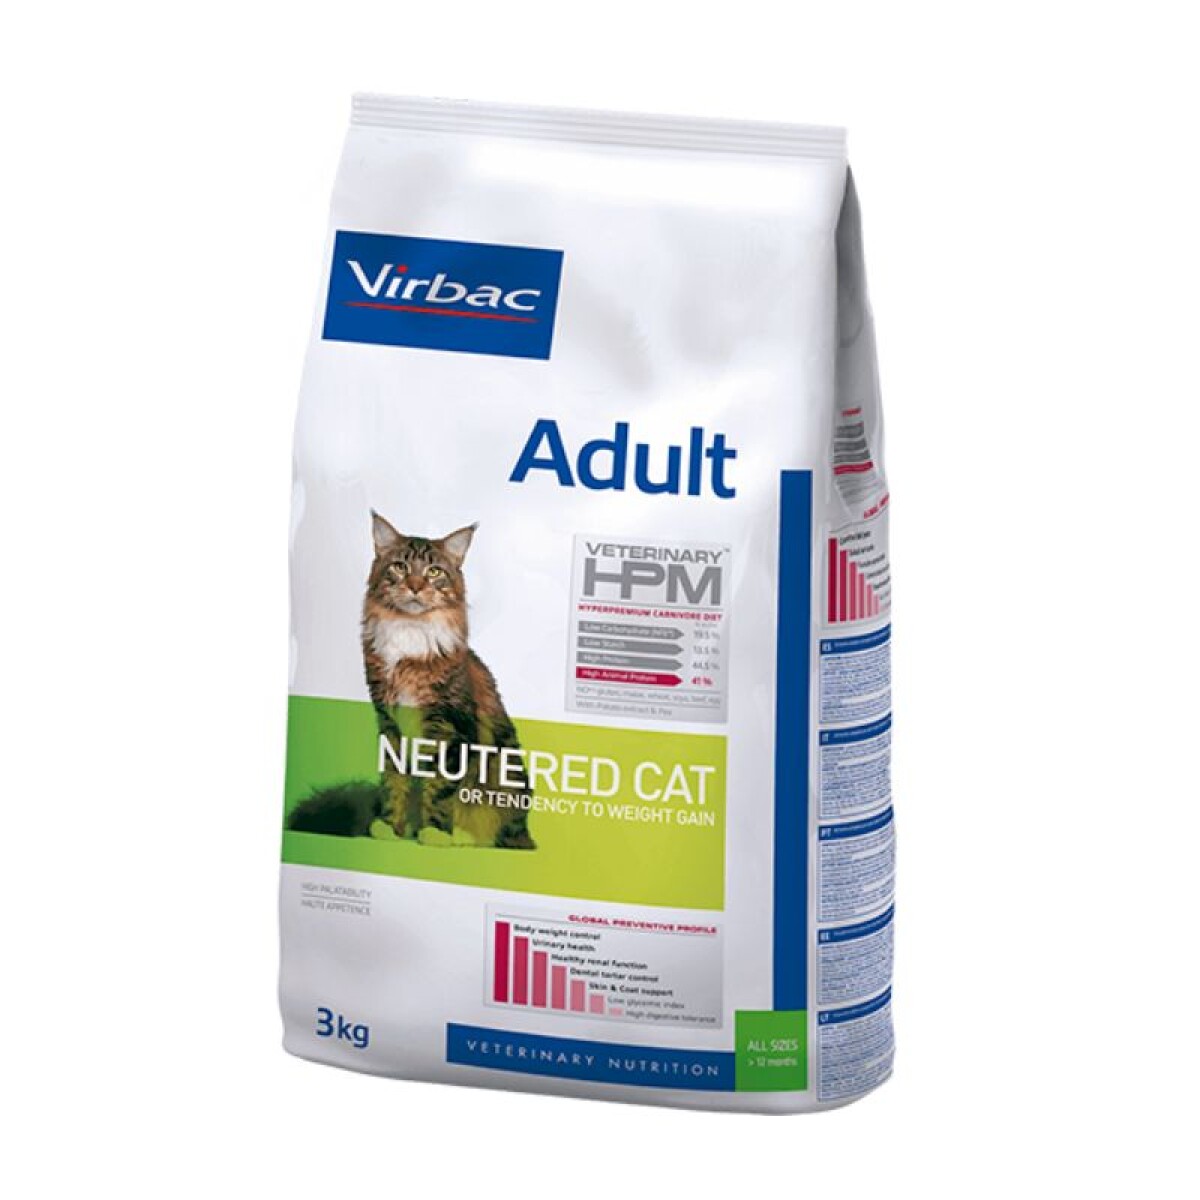 HPM ADULT NEUTERED CAT 3 KG - Hpm Adult Neutered Cat 3 Kg 